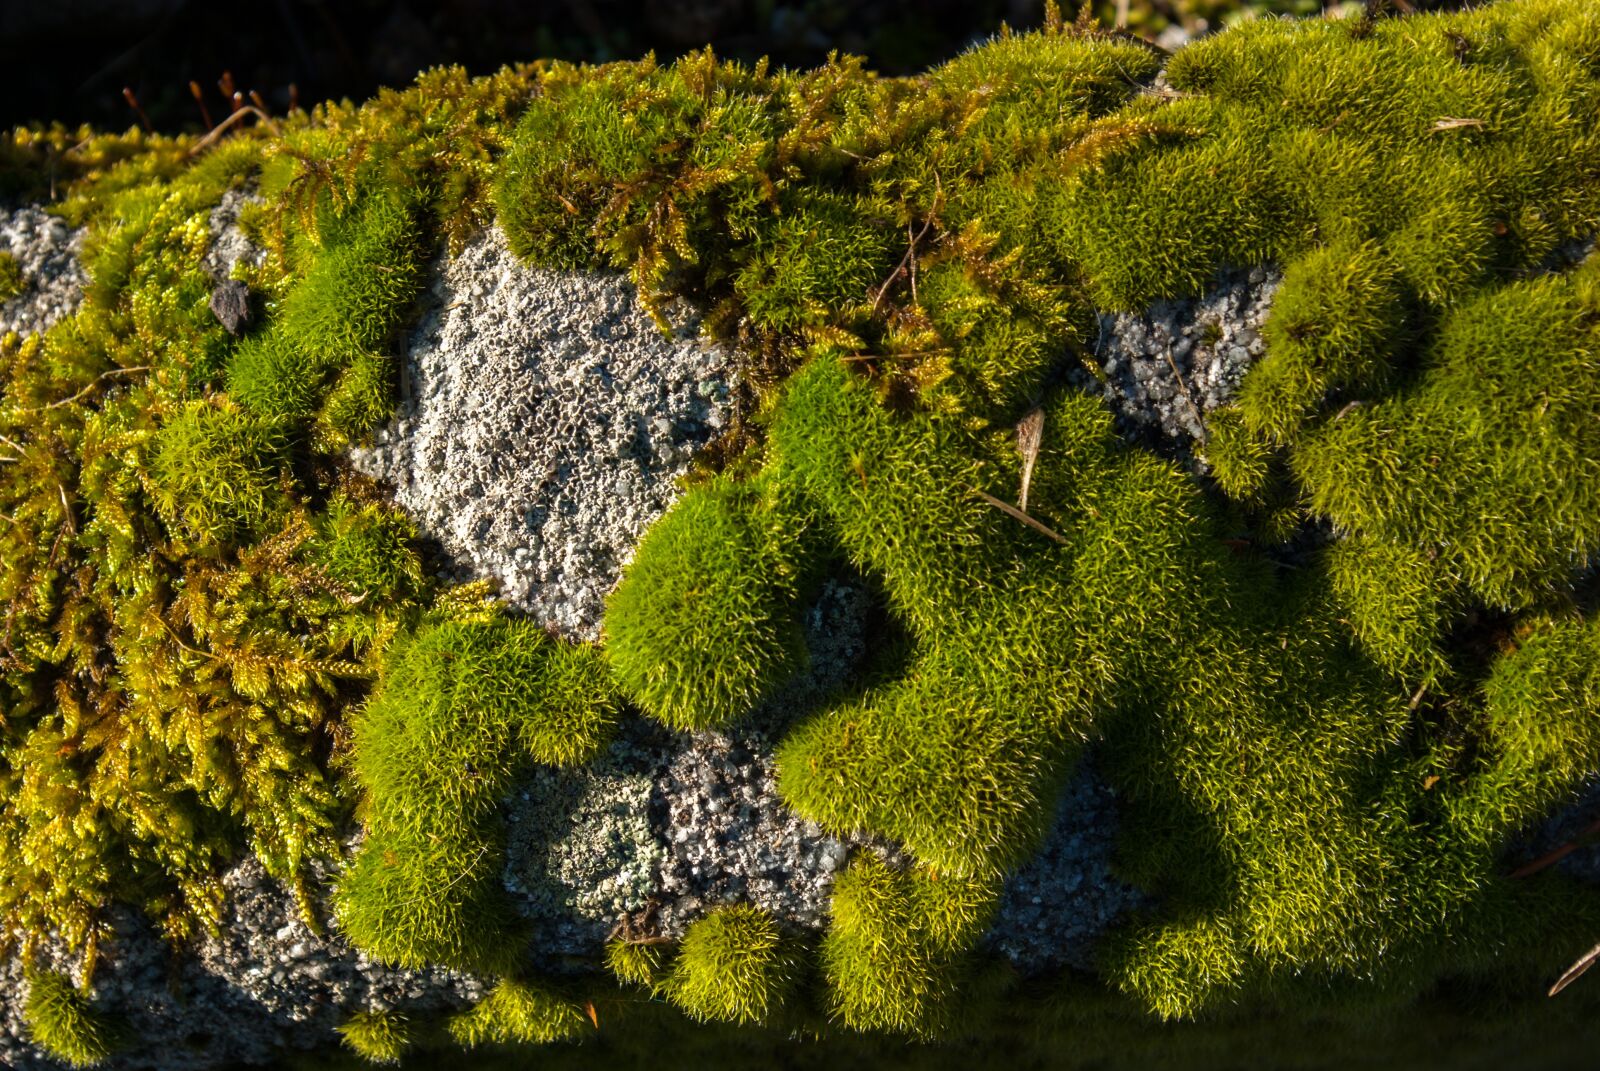 Pentax smc DA 18-55mm F3.5-5.6 AL sample photo. Lichen, moss, stone photography